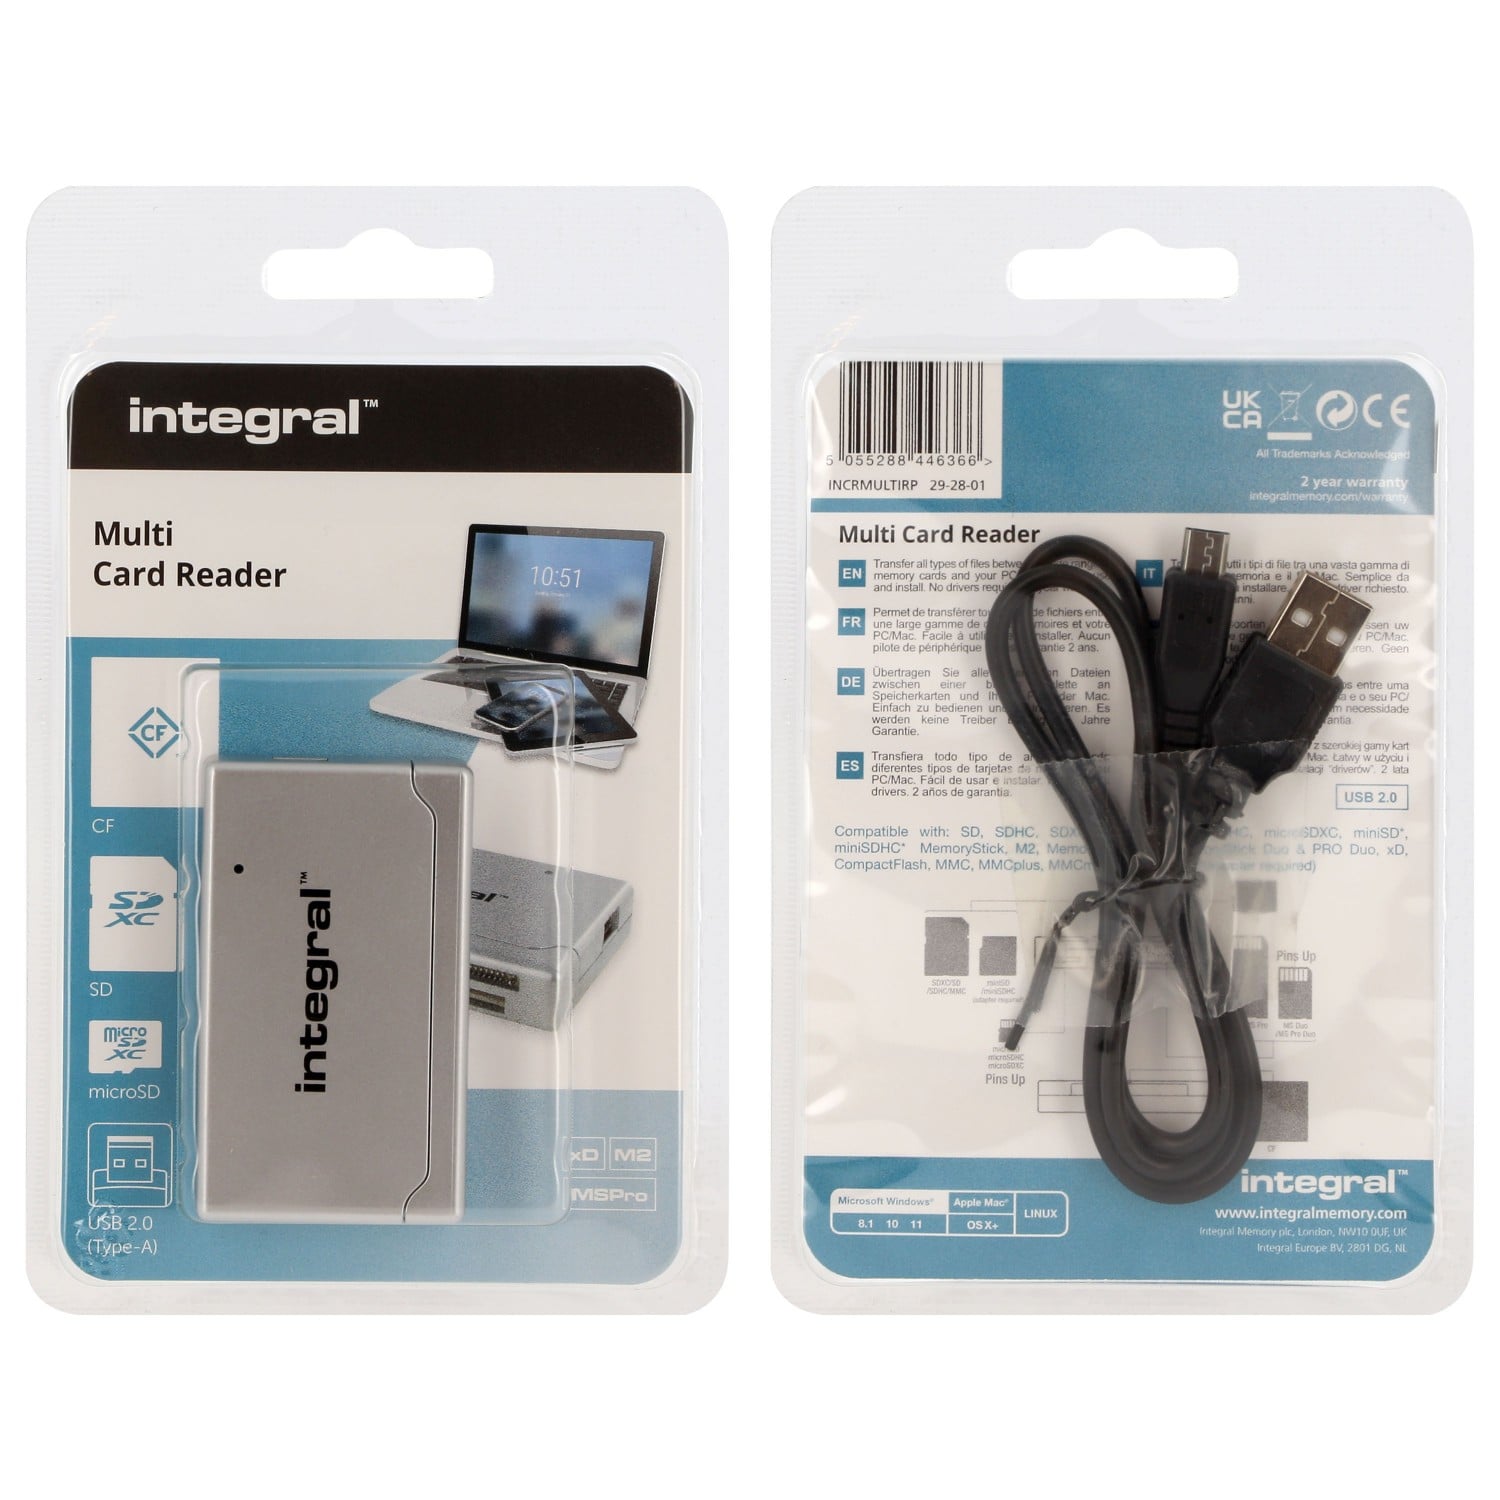 Lecteur carte mémoire CABLING ® Mini Clé USB 2.0 lecteur mémoire